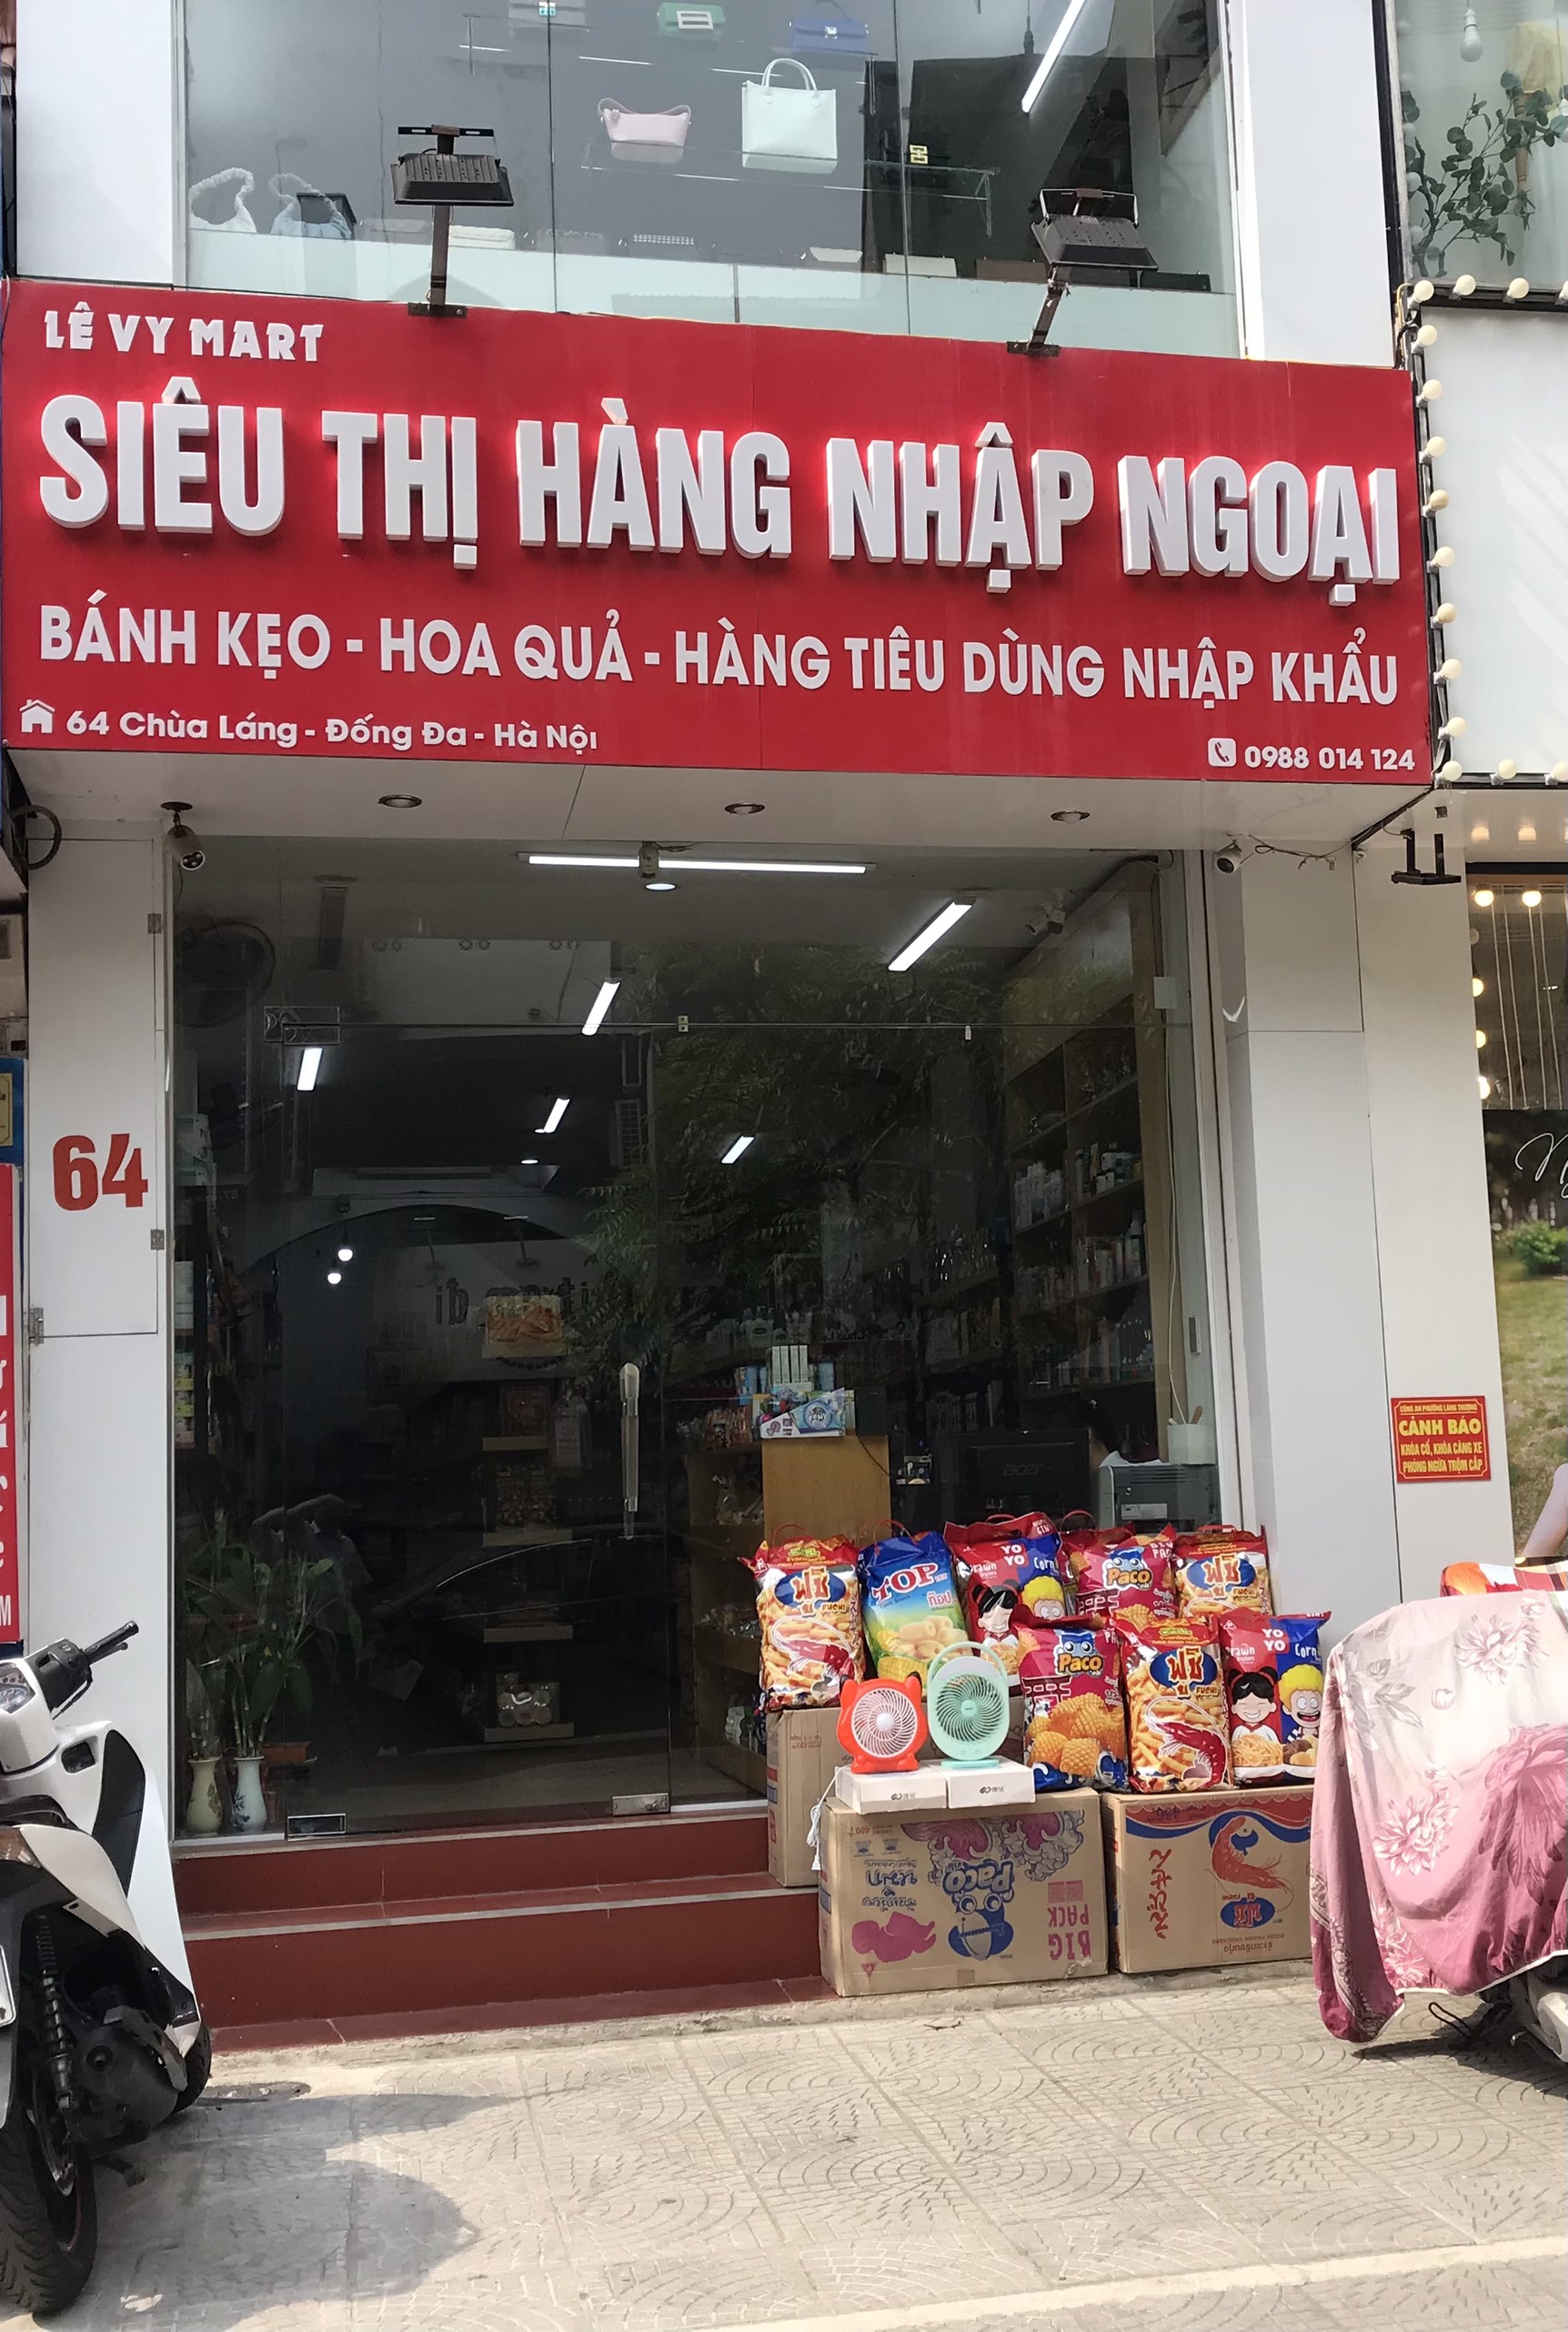 Hà Nội: Nghi vấn hệ thống siêu thị hàng nhập ngoại Lê Vy Mark bán hàng không rõ nguồn gốc xuất xứ